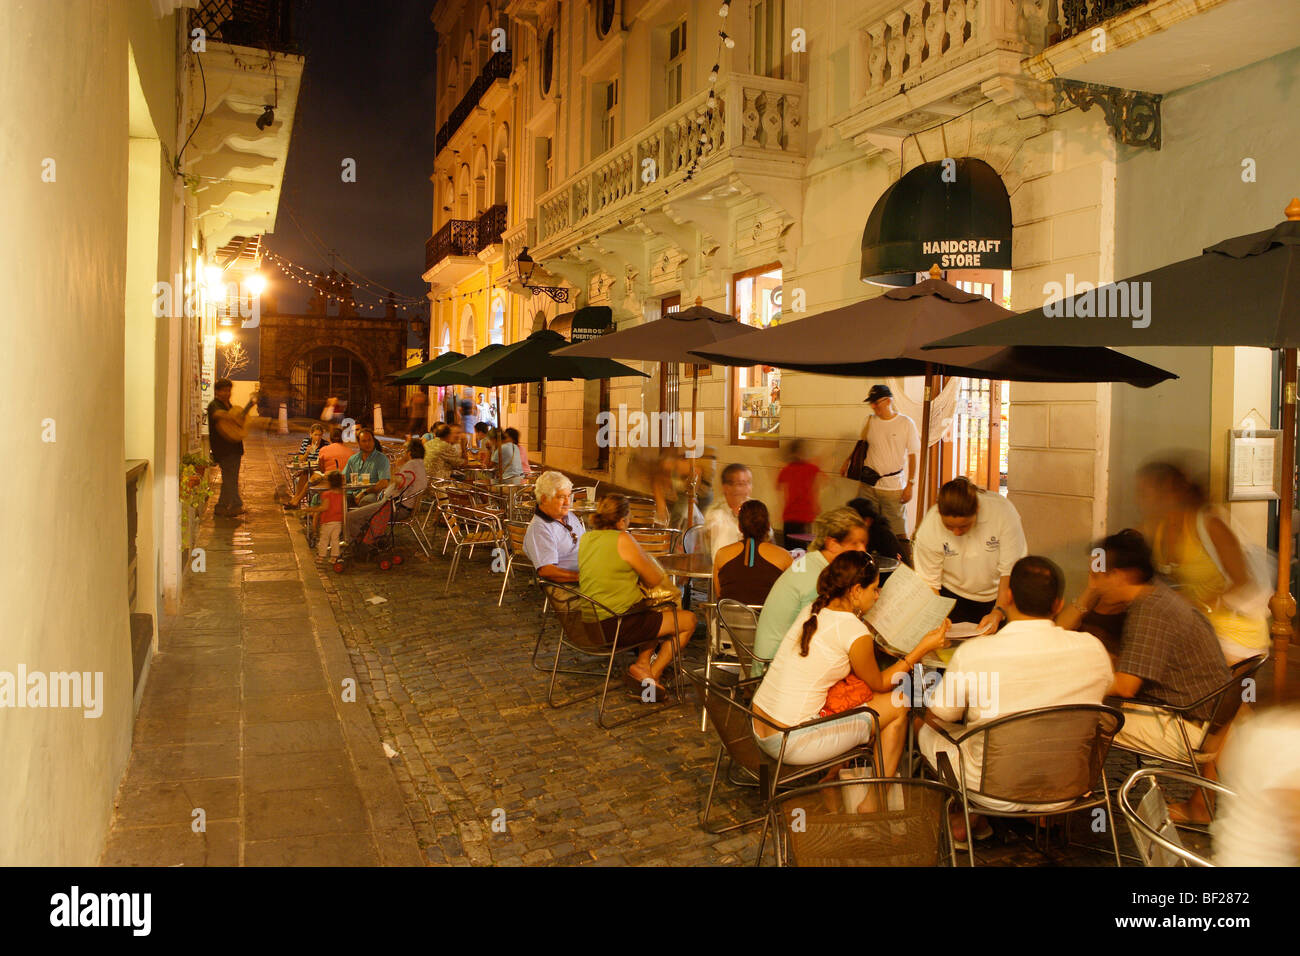 Menschen sitzen vor einem Café in der Altstadt am Abend, Calle de Christo, San Juan, Puerto Rico, Karibik, Amerika Stockfoto